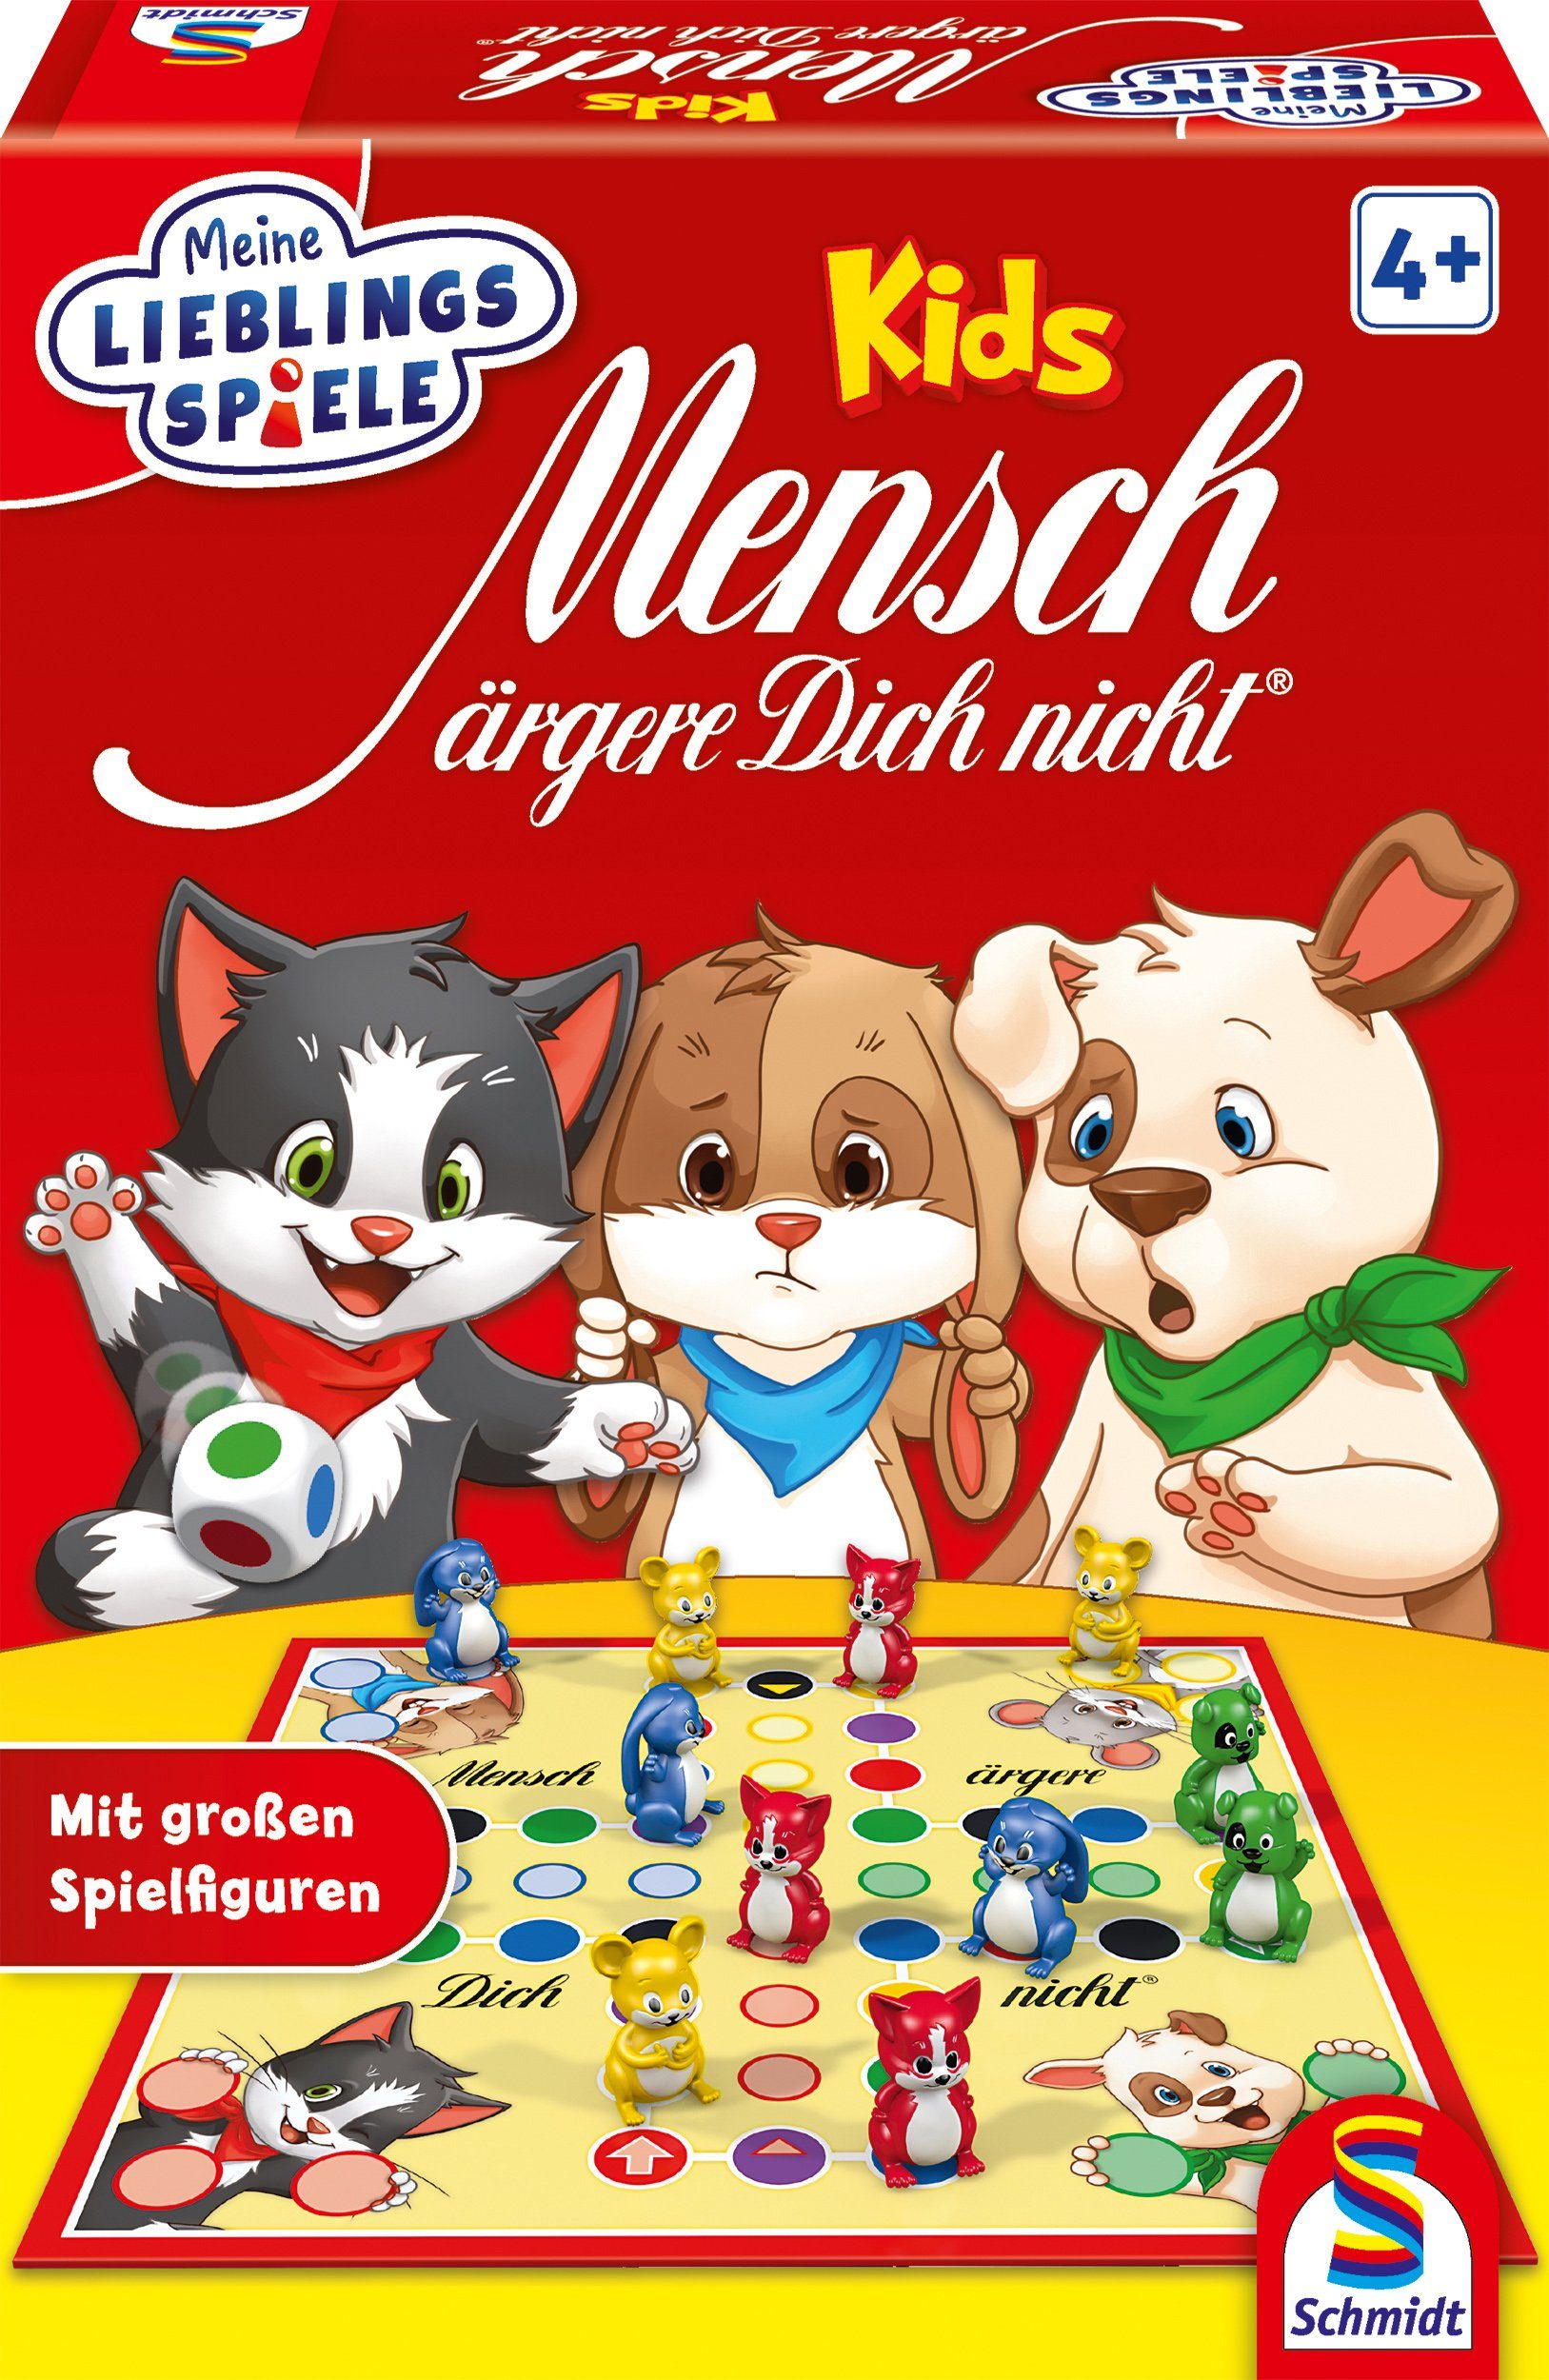 Schmidt Spiele Spiel, Mensch ärgere dich nicht® Kids, Made in Germany